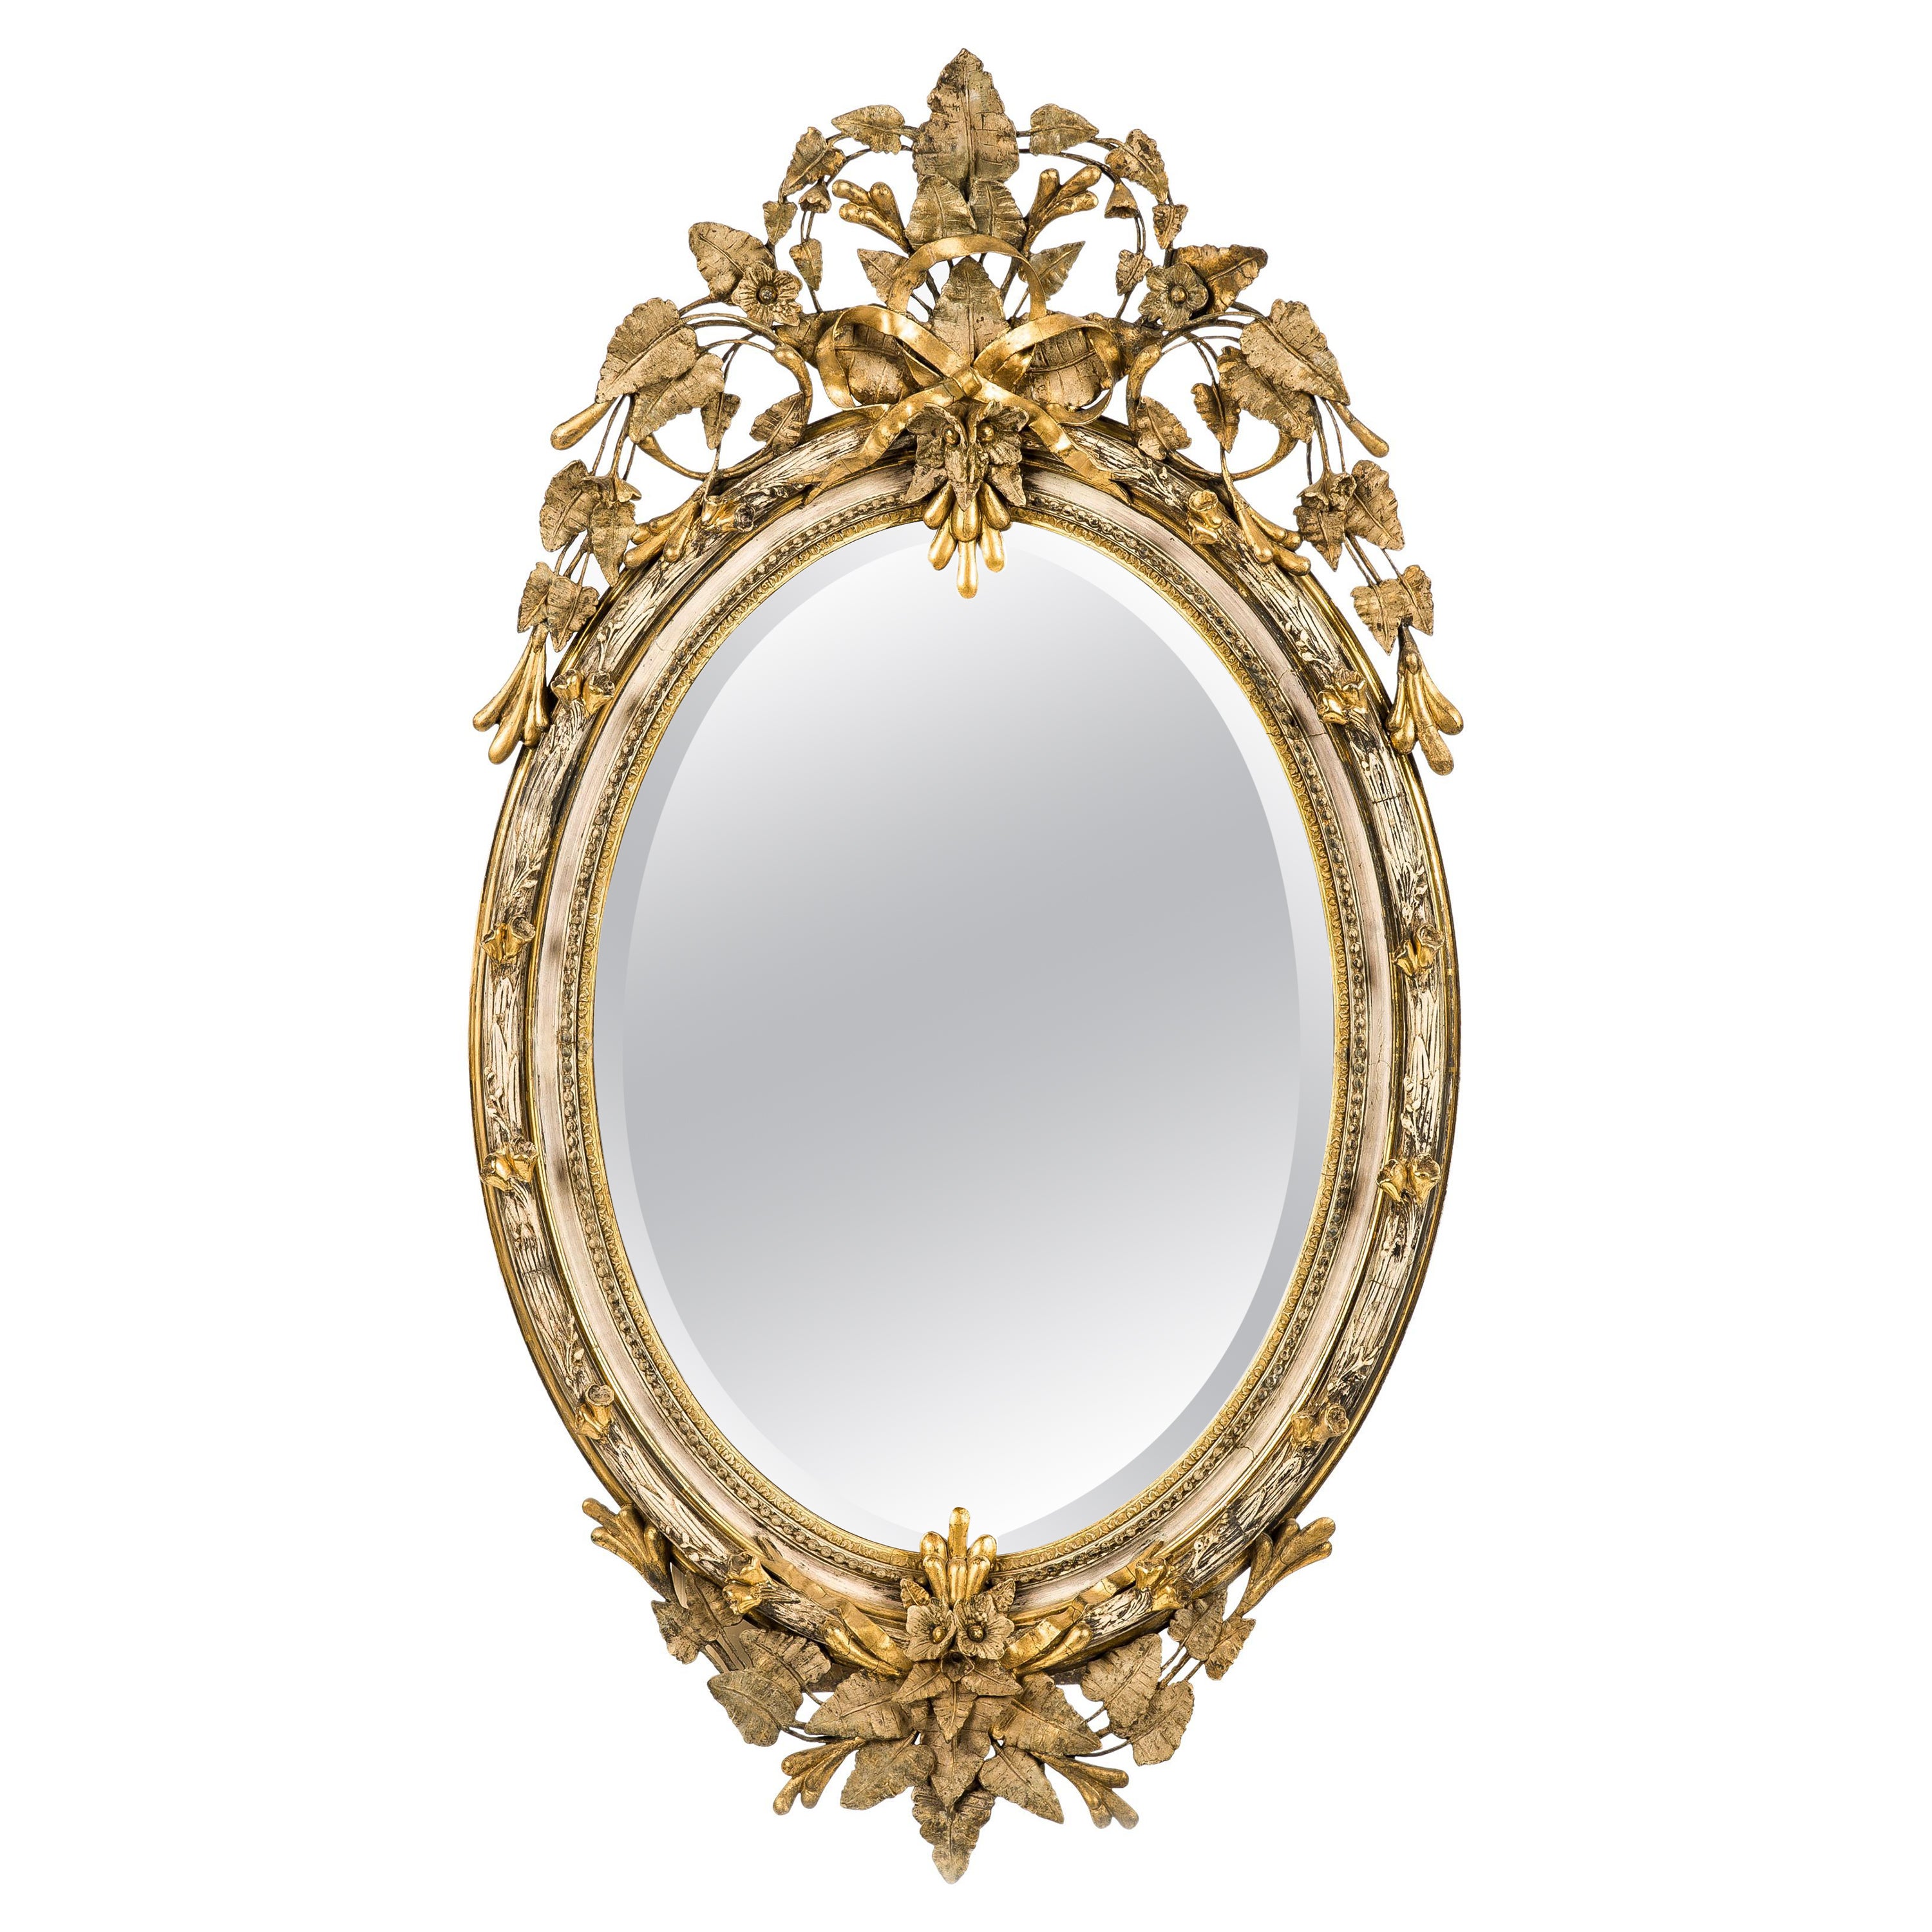 Grand miroir ovale français ancien du 19ème siècle, doré à l'or avec crête